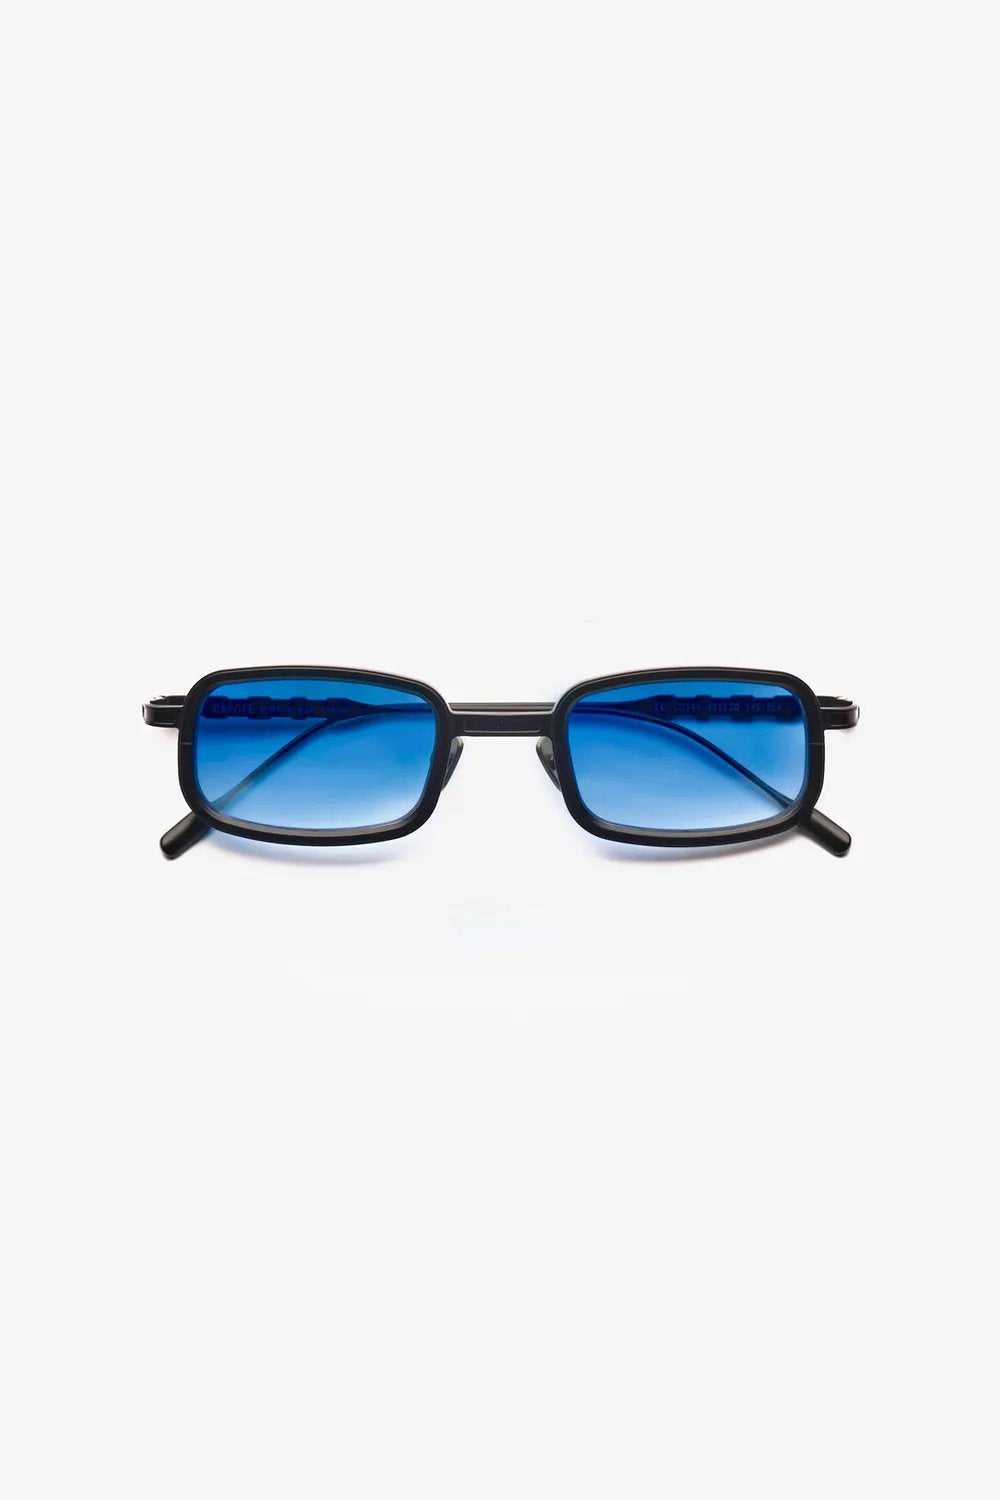 Capote - CC144 Sunglasses Capote Blue ONES 